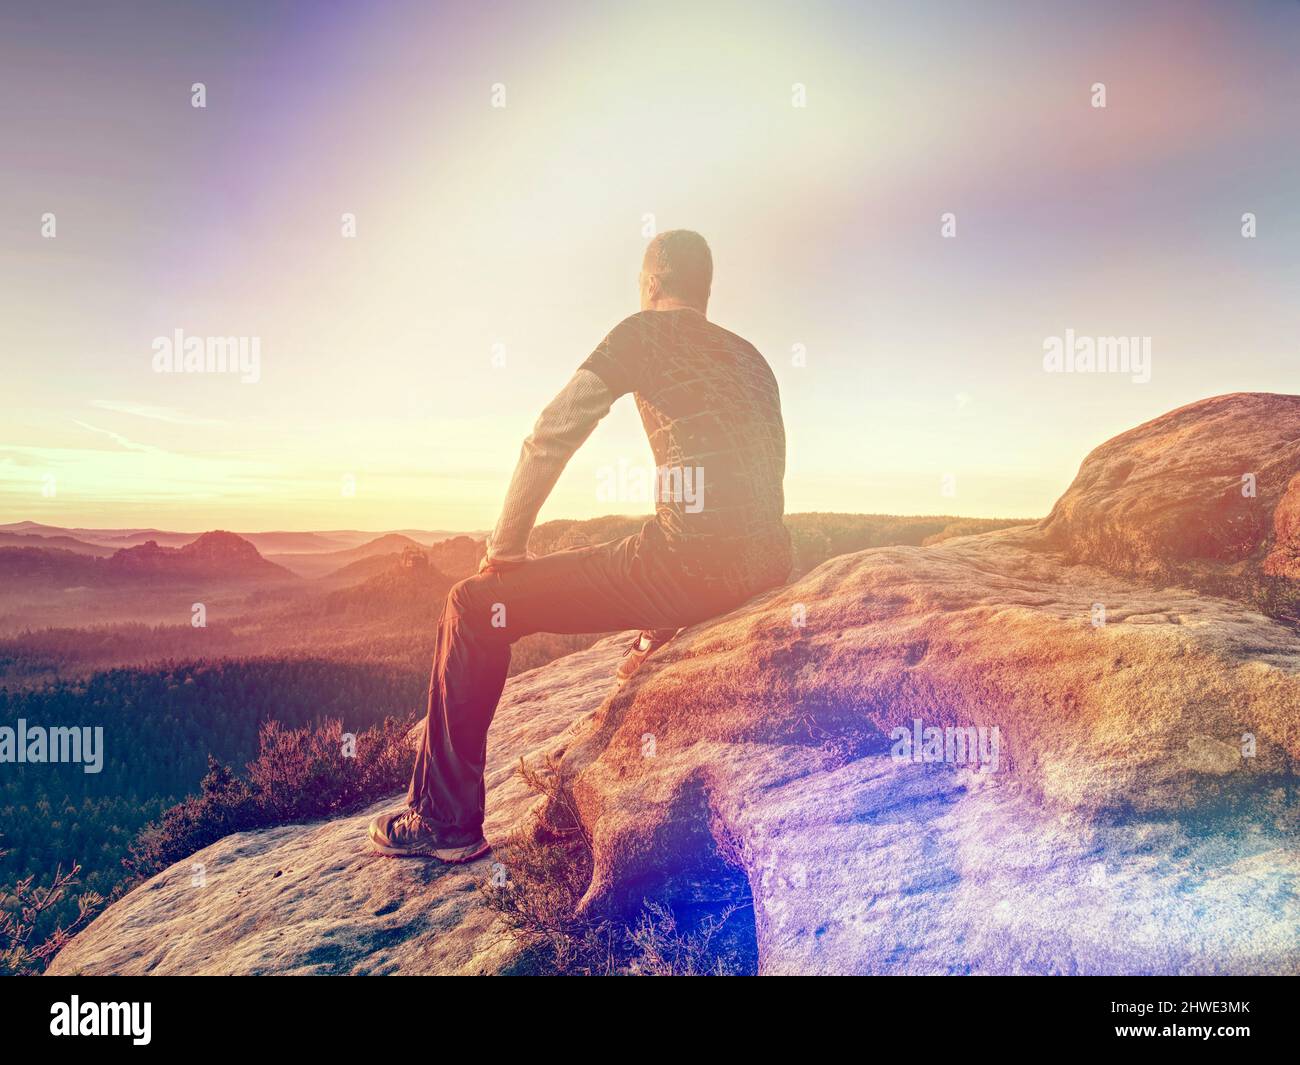 El turista se sienta en una piedra en el borde del acantilado con vistas a las llanuras debajo en el borde brumoso del horizonte. Vista trasera. Iluminación abstracta, llamaradas coloridas. Foto de stock